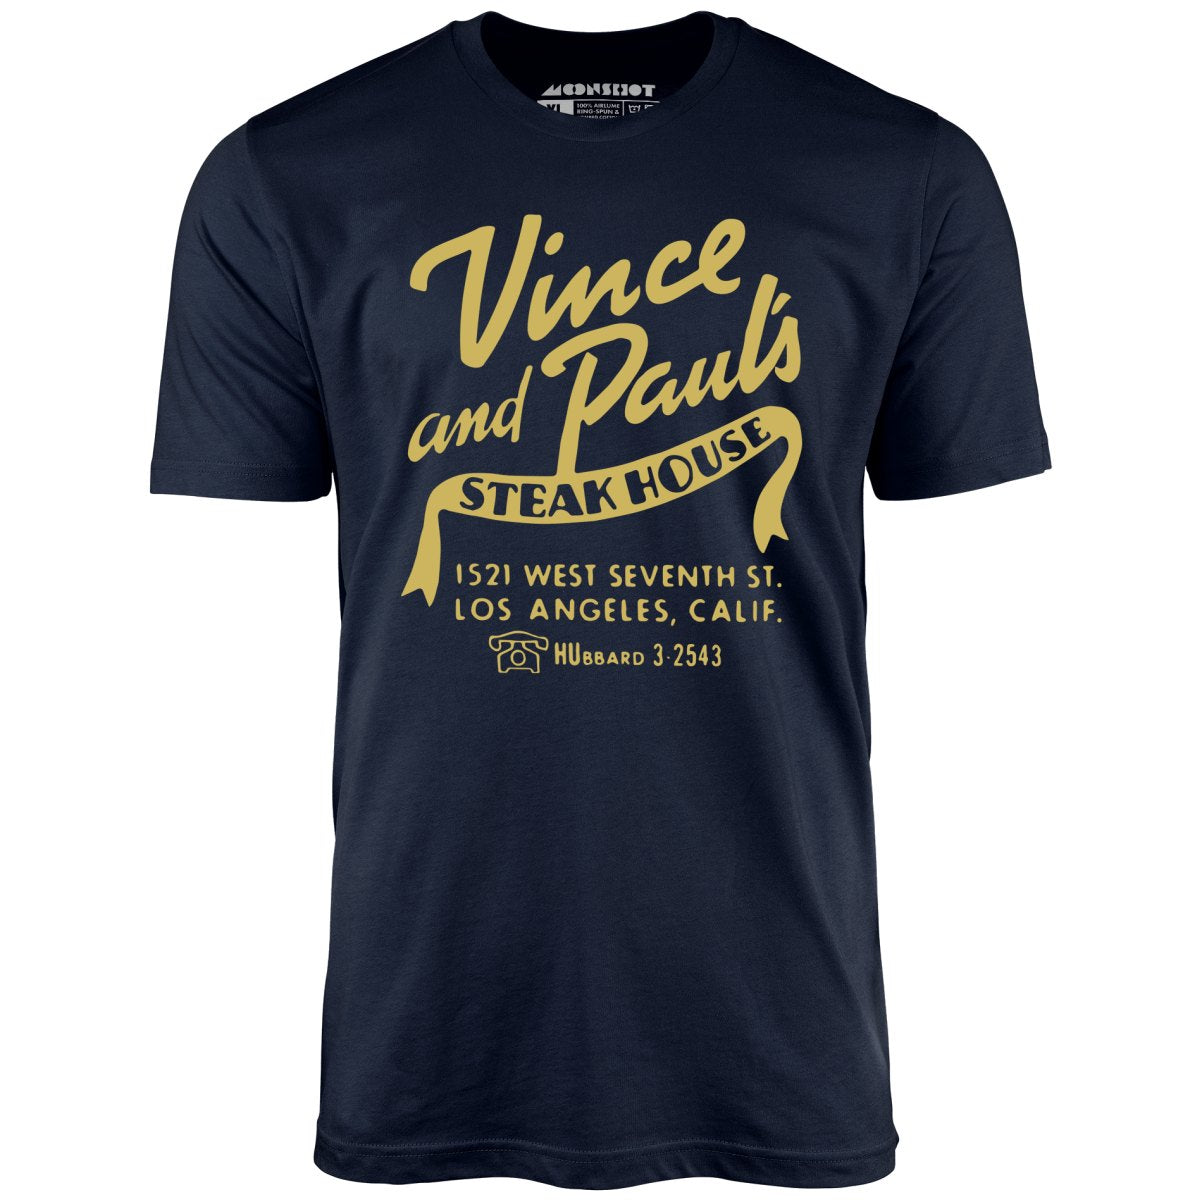 Vince and Paul's Steakhouse - Los Angeles, CA - Vintage Restaurant - Unisex T-Shirt